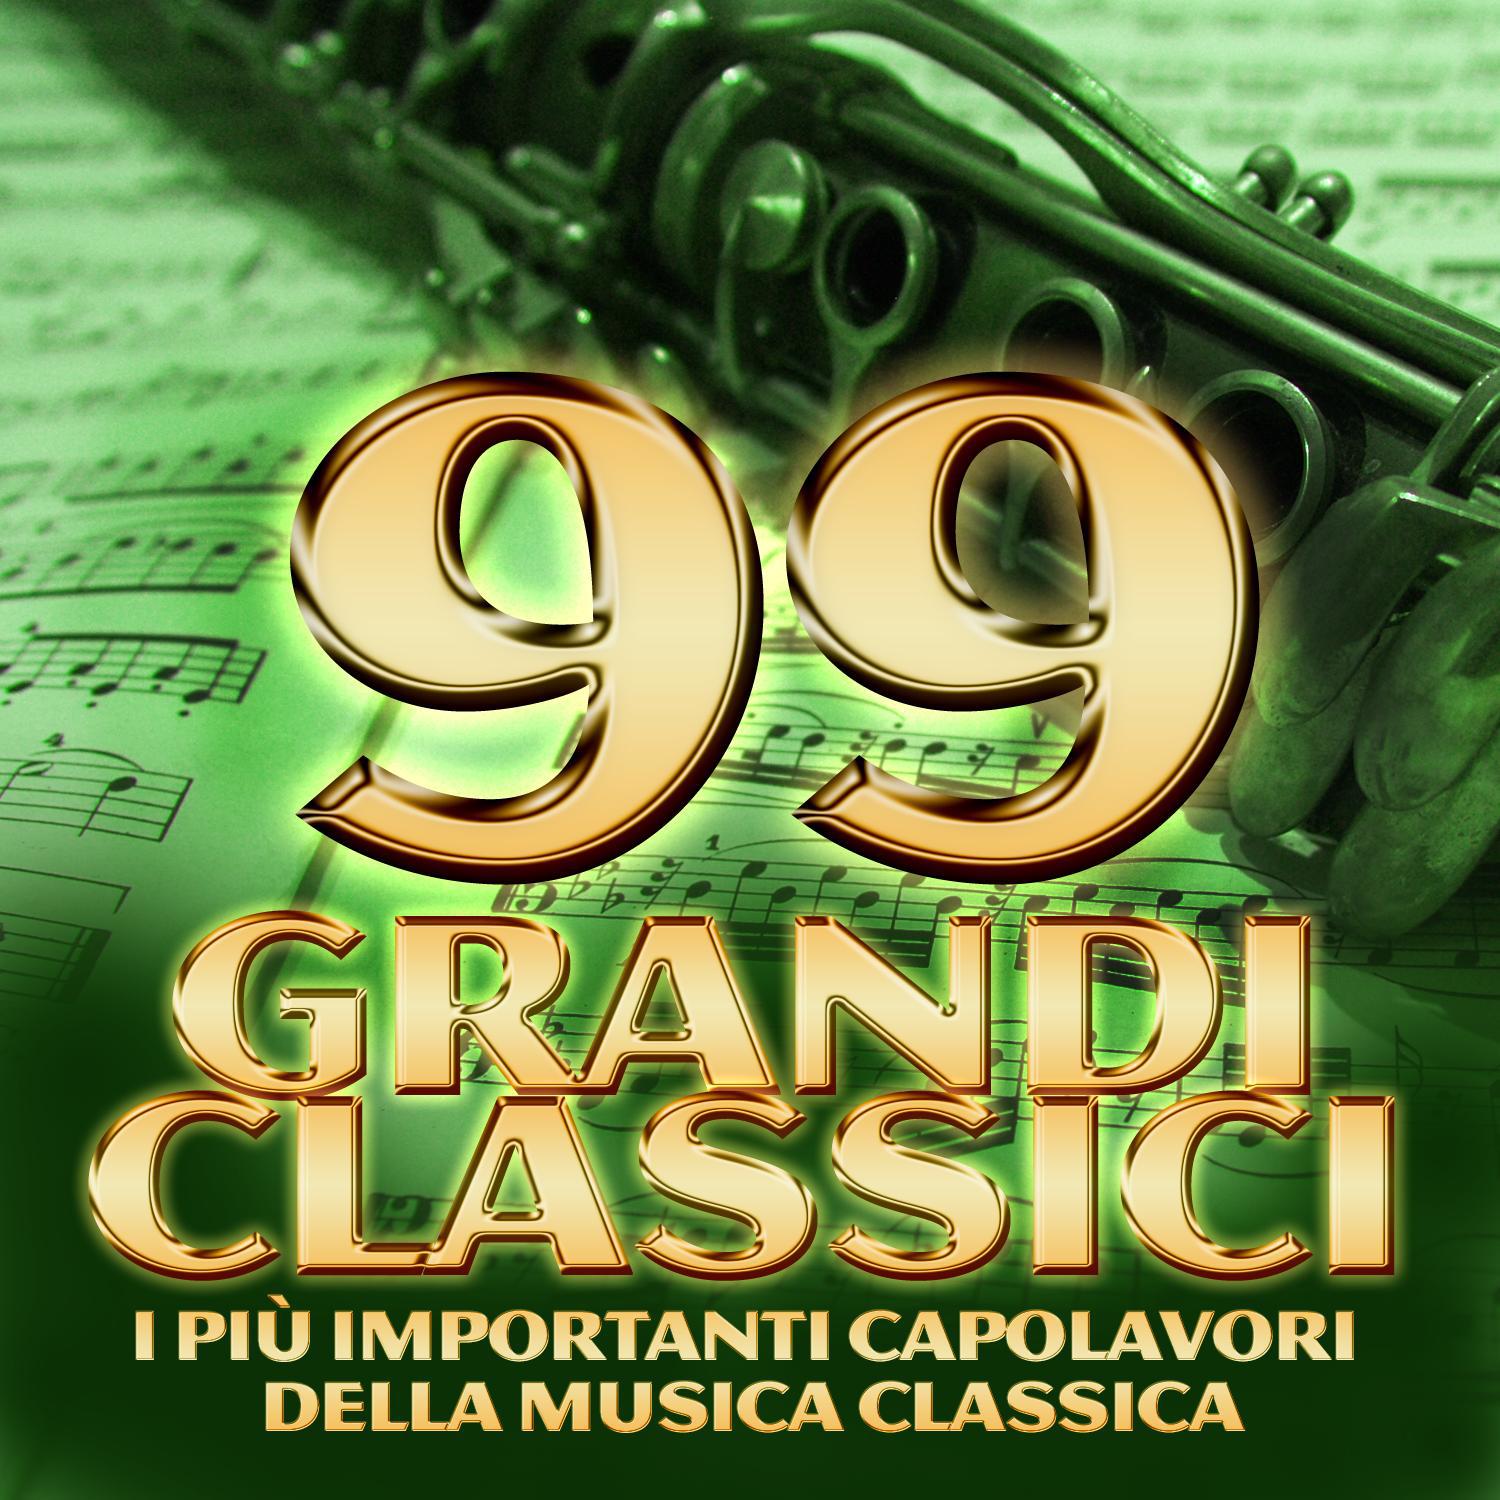 99 grandi classici  I piu importanti capolavori della musica classica